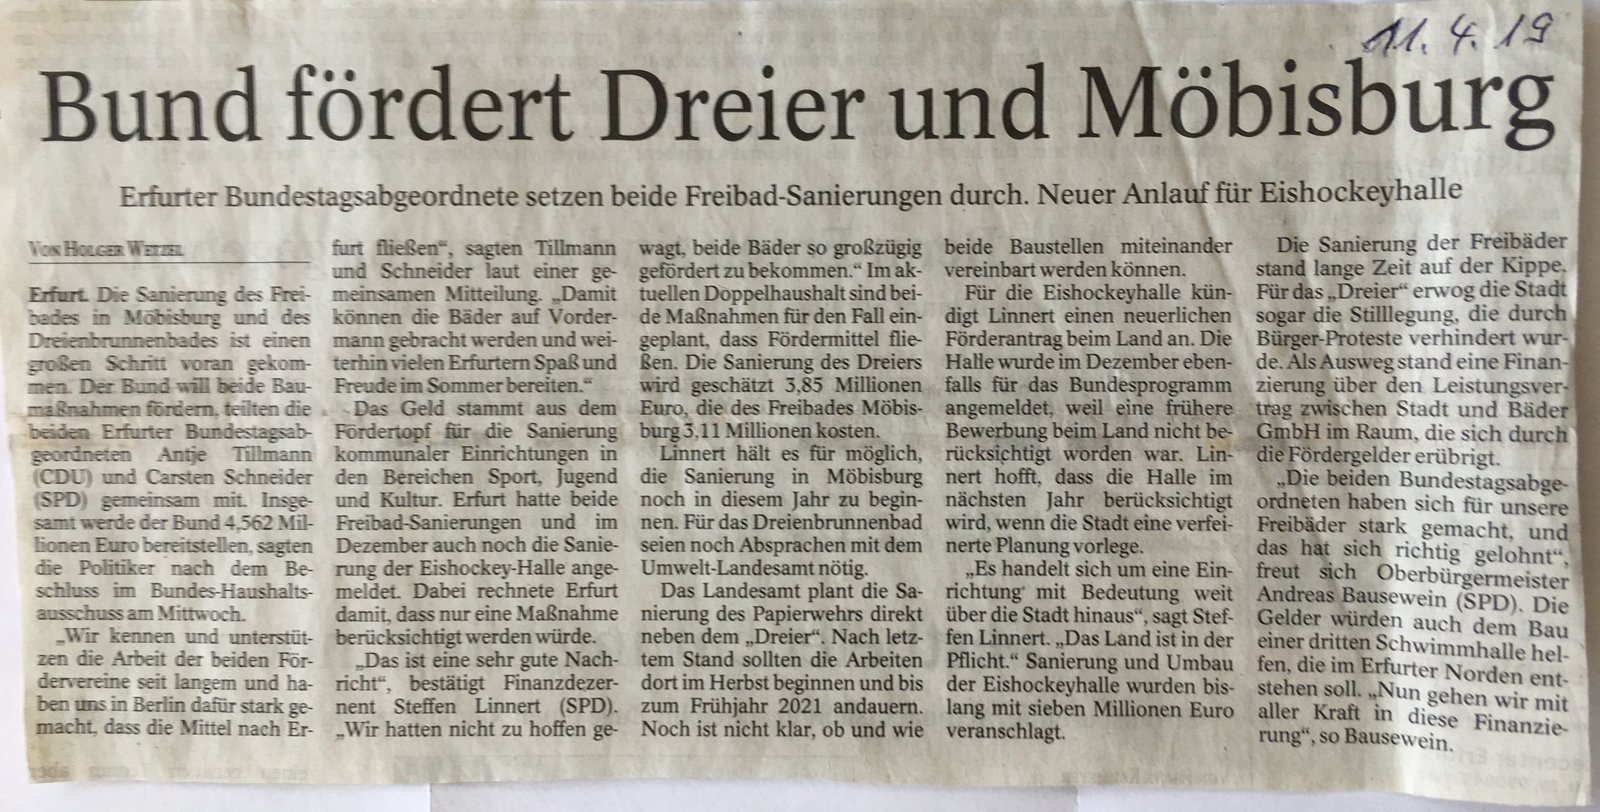 Presse: Bund fördert Dreier und Möbisburg, Bild: Quelle: TA 11.4.2019